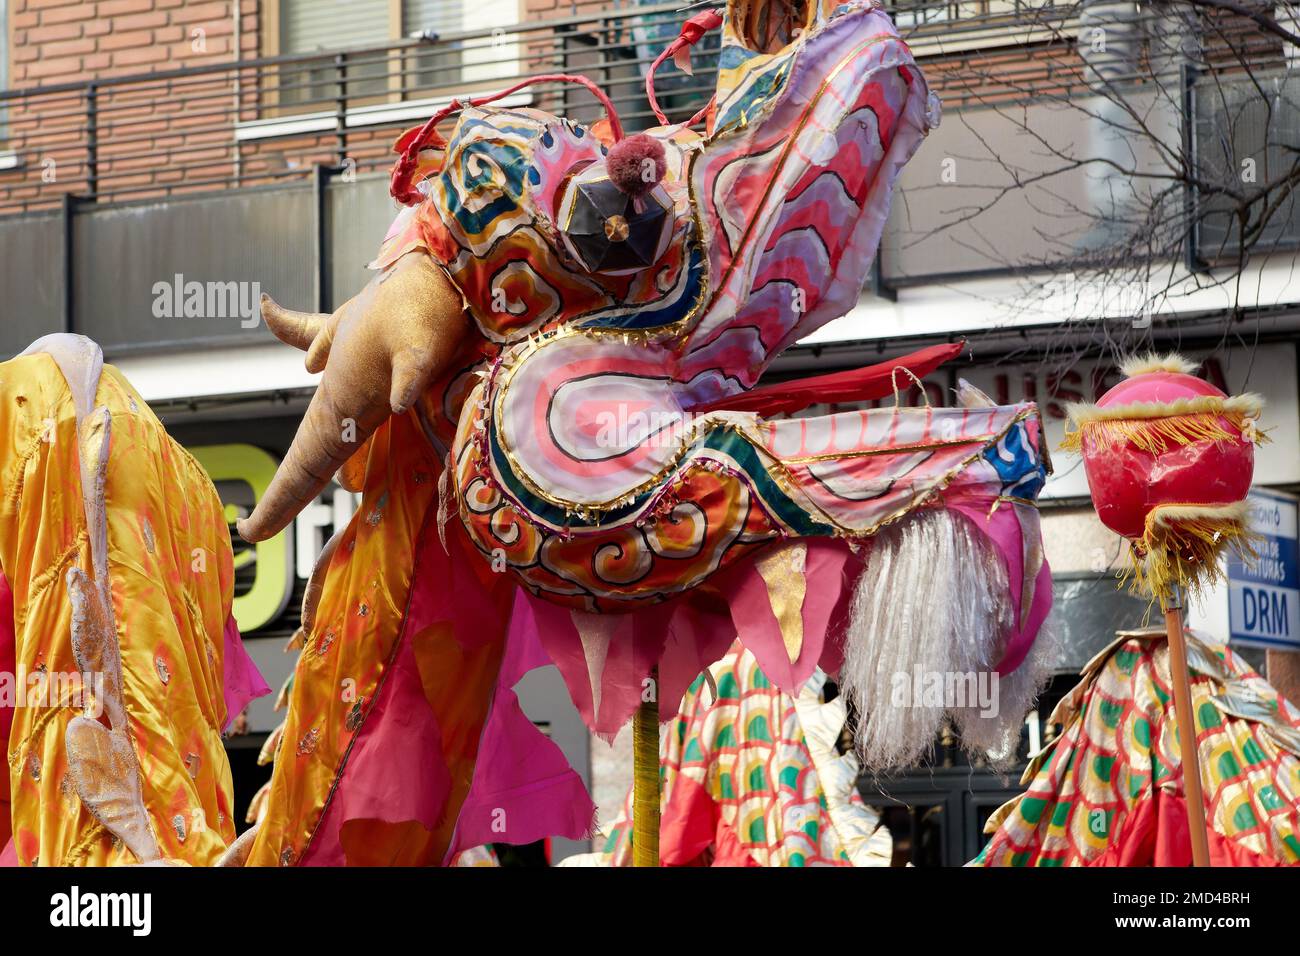 Feier des chinesischen Neujahrs im Stadtviertel Madrid mit der größten Präsenz chinesischer Einwanderer in der Hauptstadt. Stockfoto